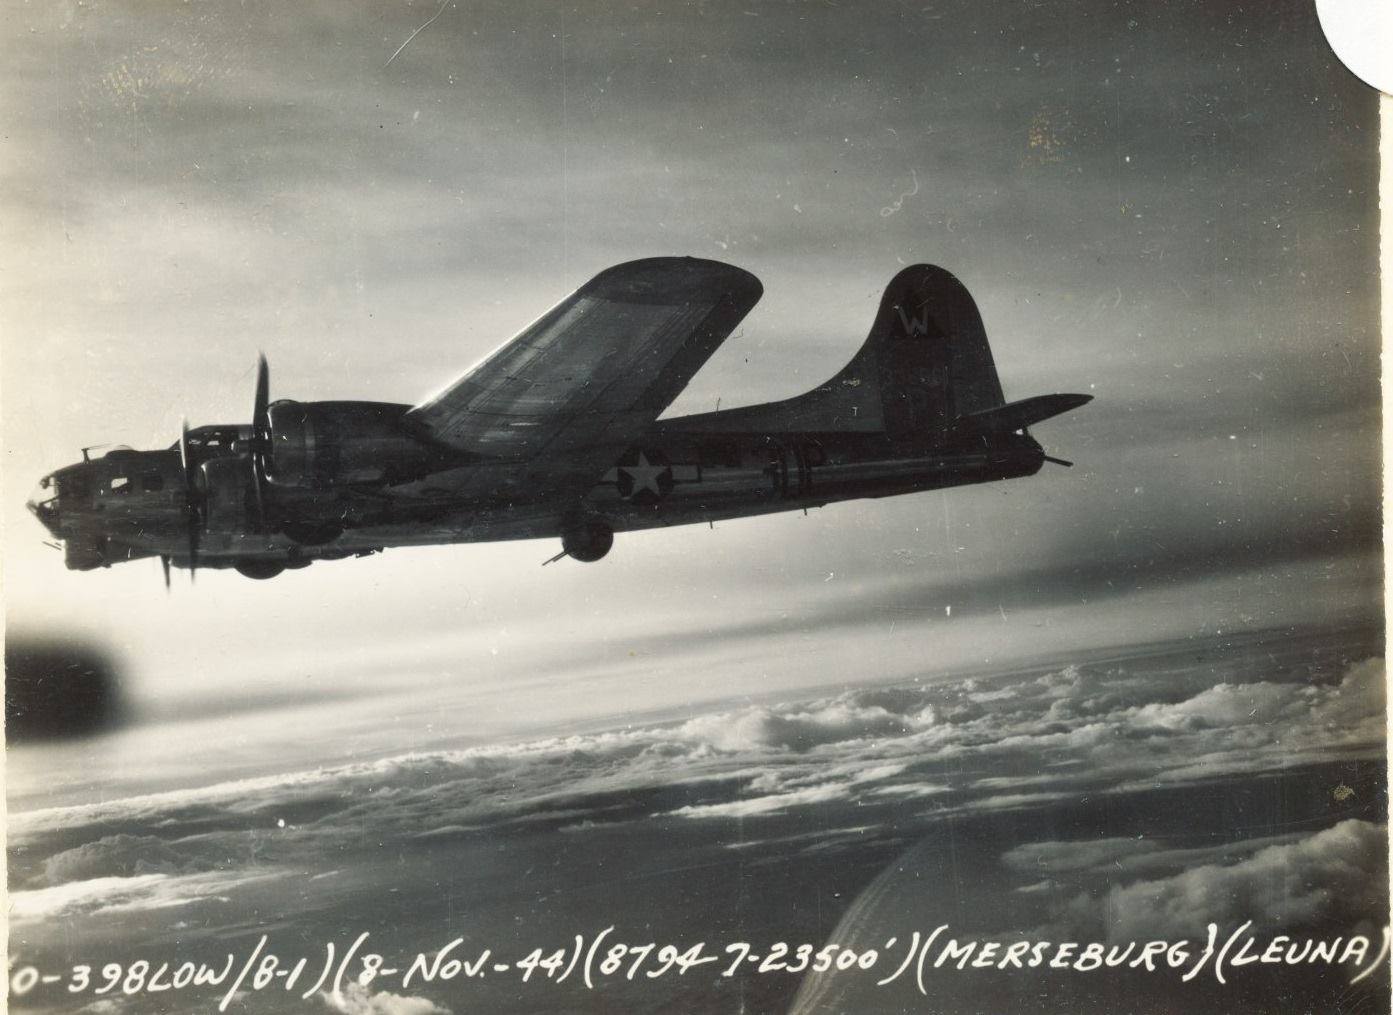 B-17 #43-38661